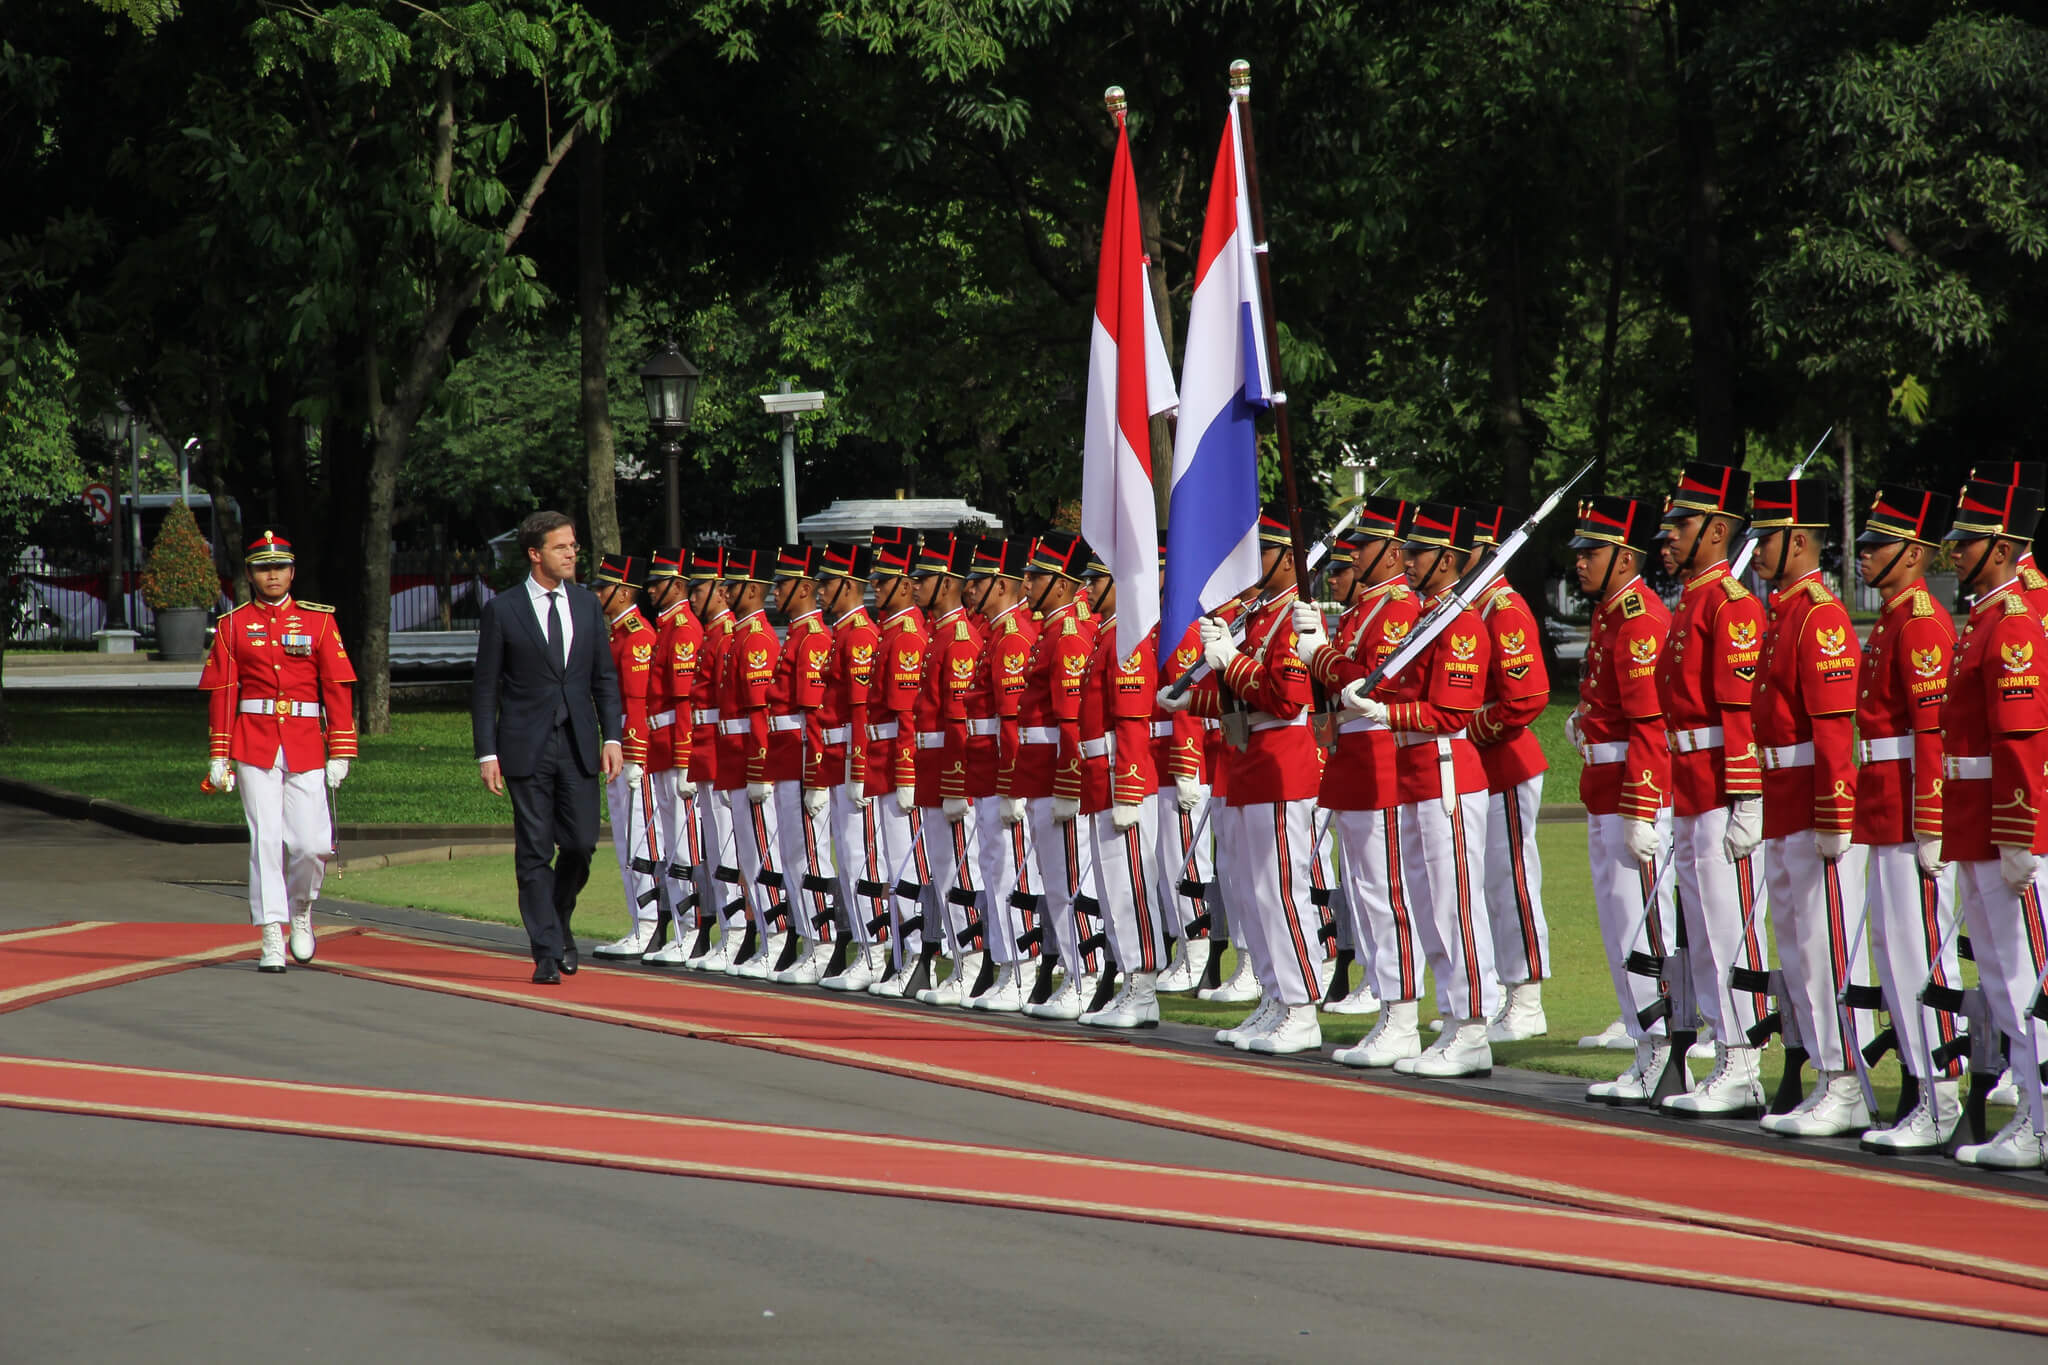 deJong-foto4-Minister-president Rutte inspecteert de erewacht bij het Indonesische presidentiële paleis.nov 2013-Minister-president Rutte-Flickr